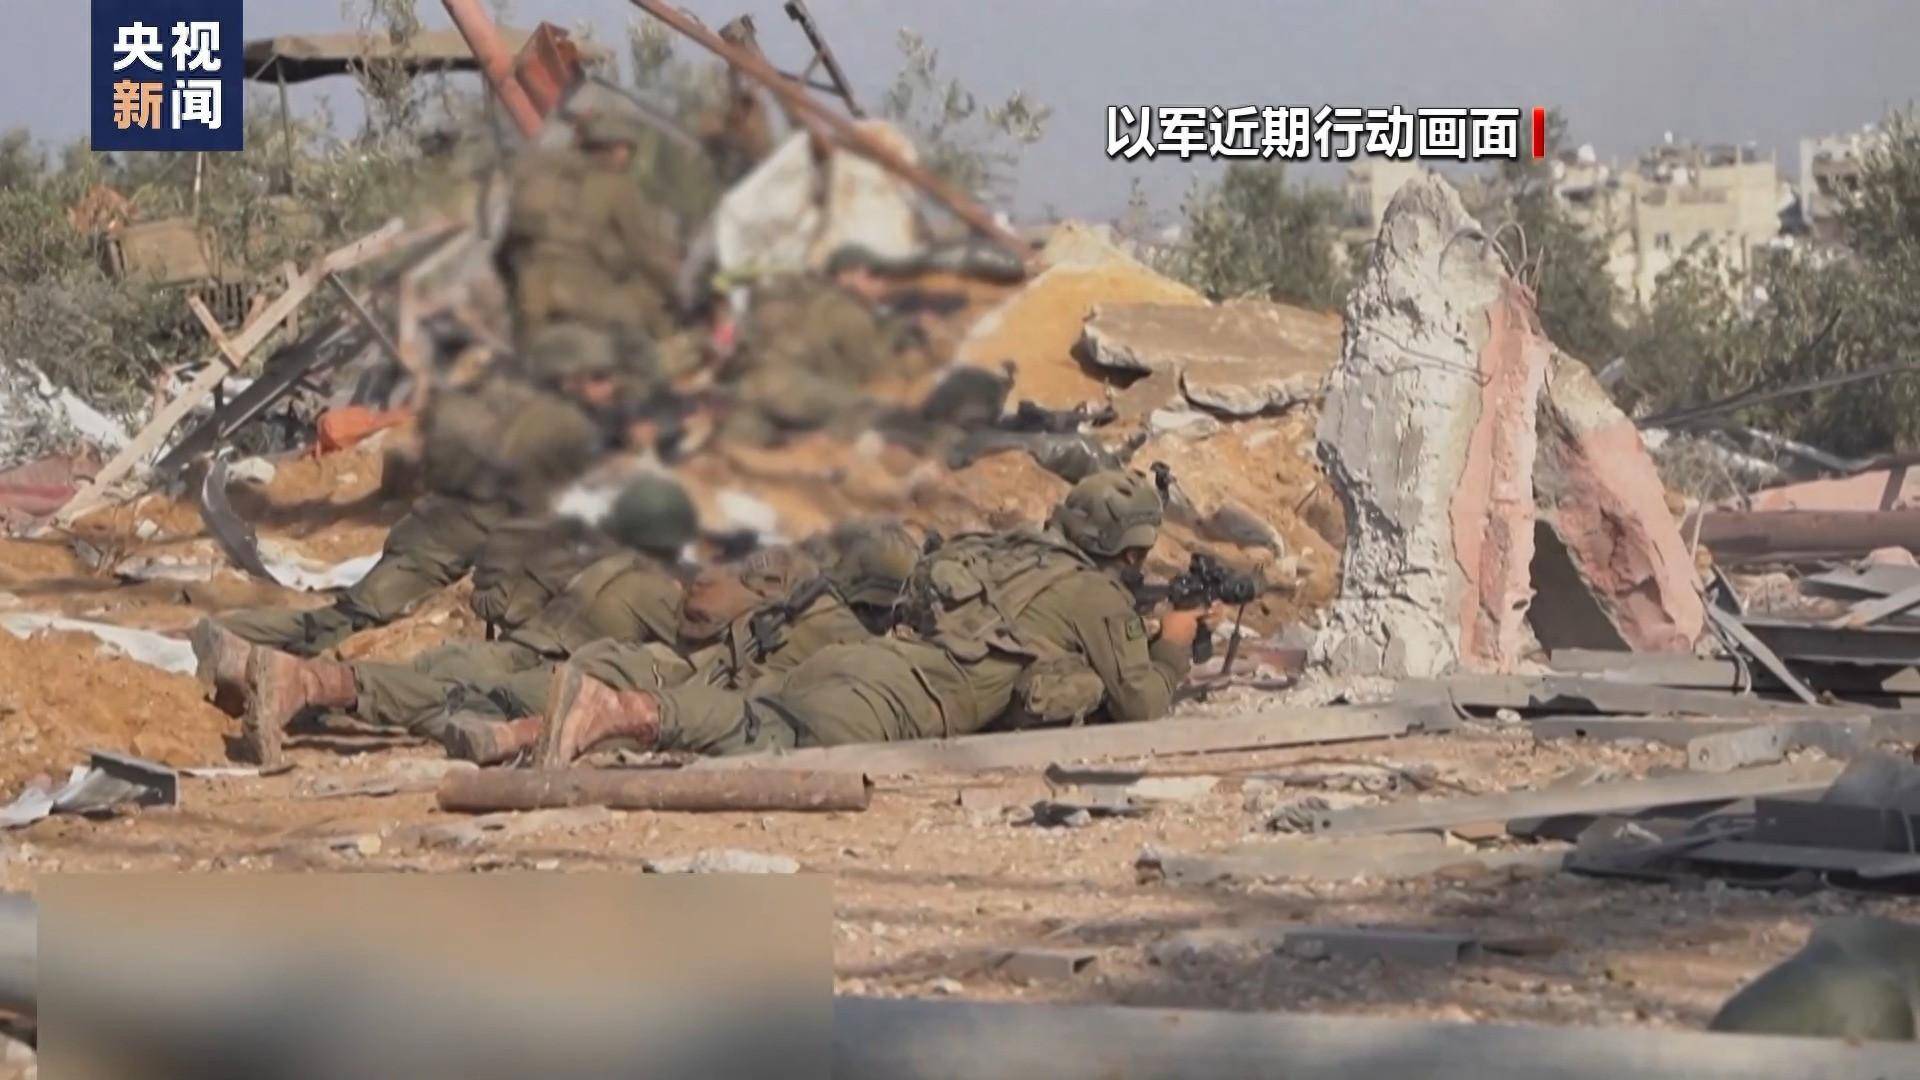 以色列修正10月7日哈马斯袭击事件死亡人数 - Mandarinian